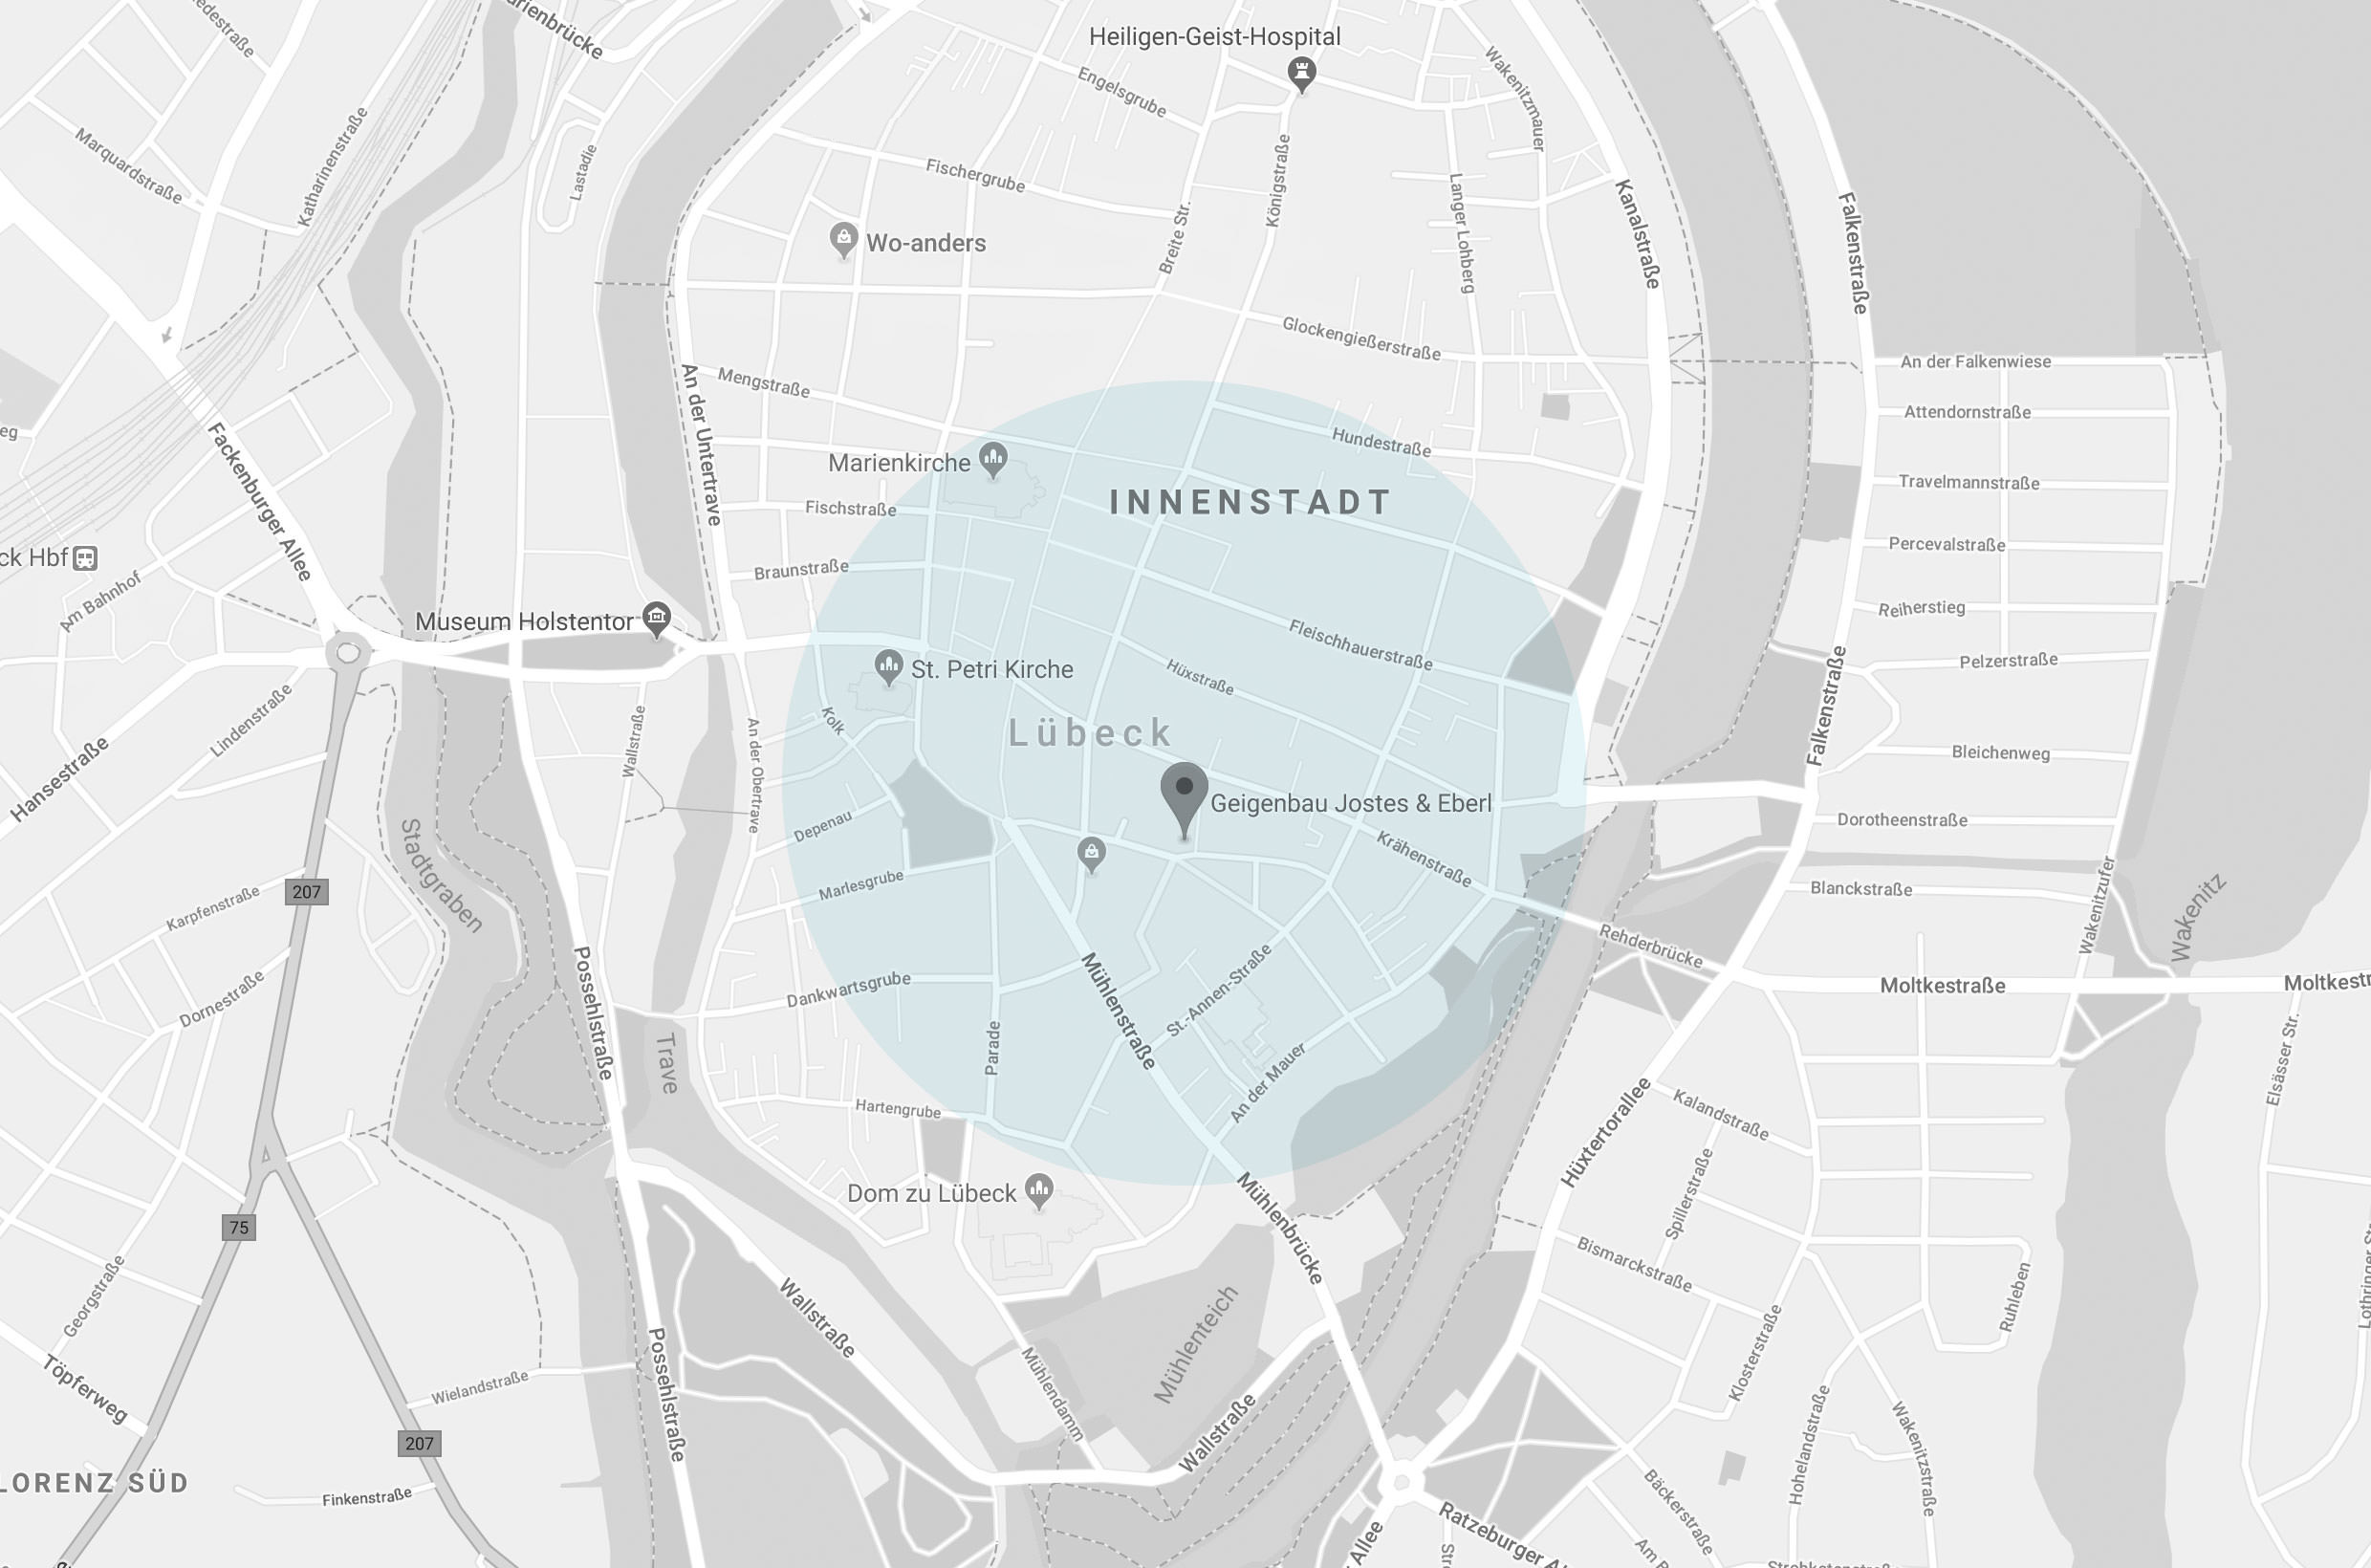 Google Maps: Geigenbauwerkstatt Jostes Eberl, Aegidienstraße 43, 23552 Lübeck